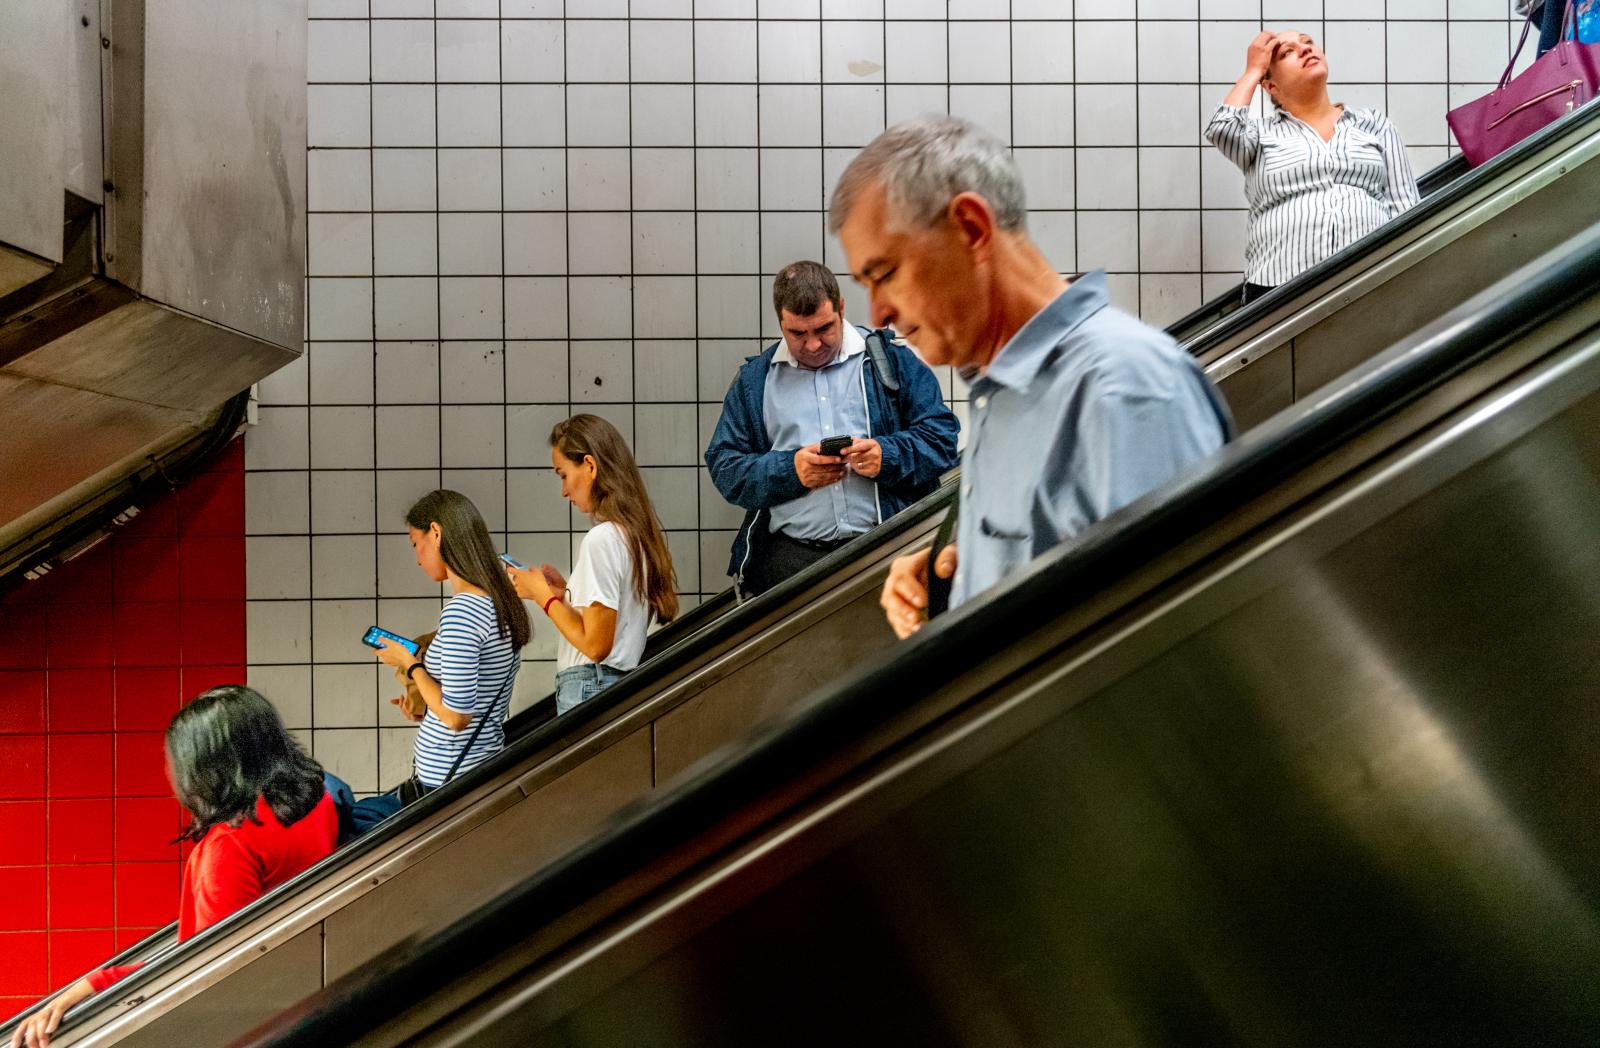 Rush Hour/NYC Subway 180820684 | Buy this image